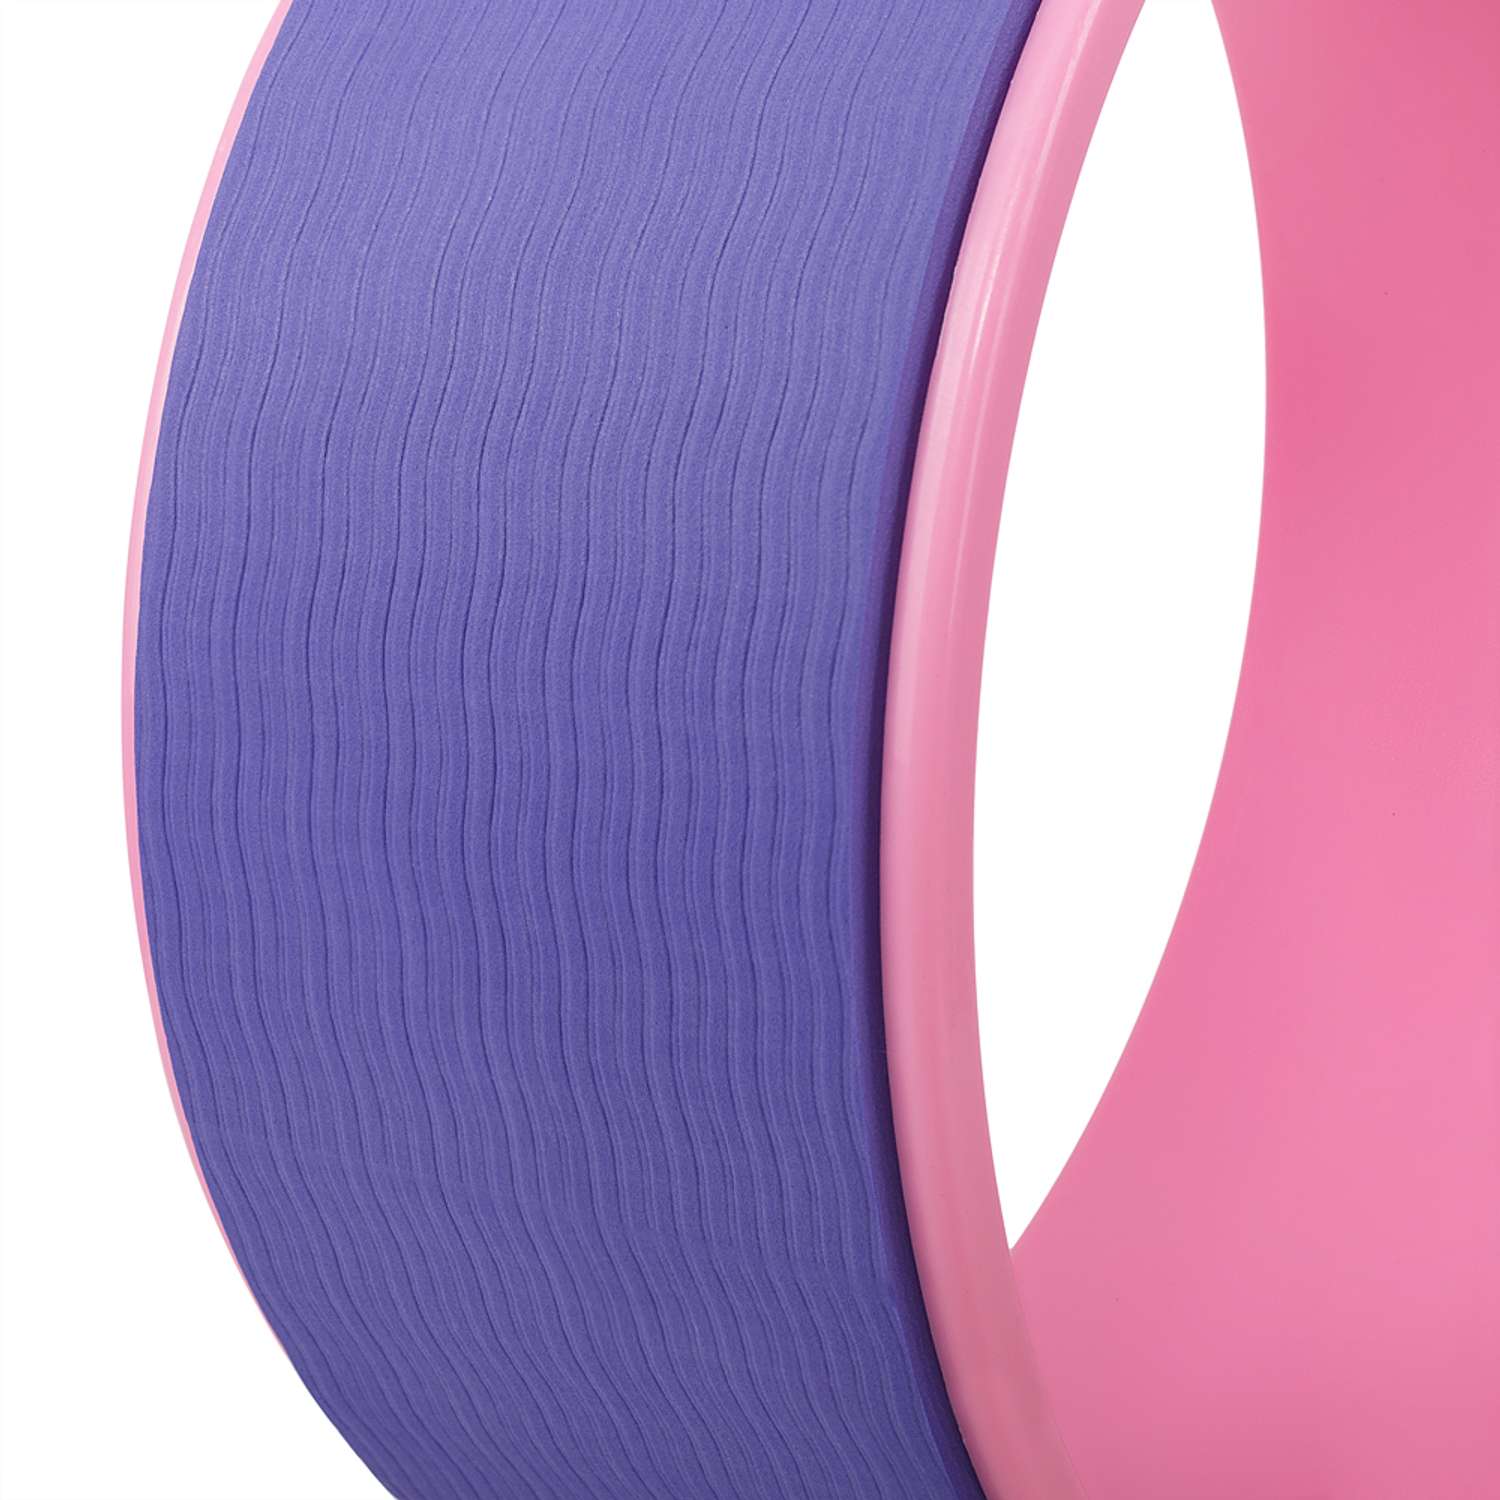 Колесо для йоги STRONG BODY фитнеса и пилатес 30 см х 12 см фиолетово-розовое - фото 5